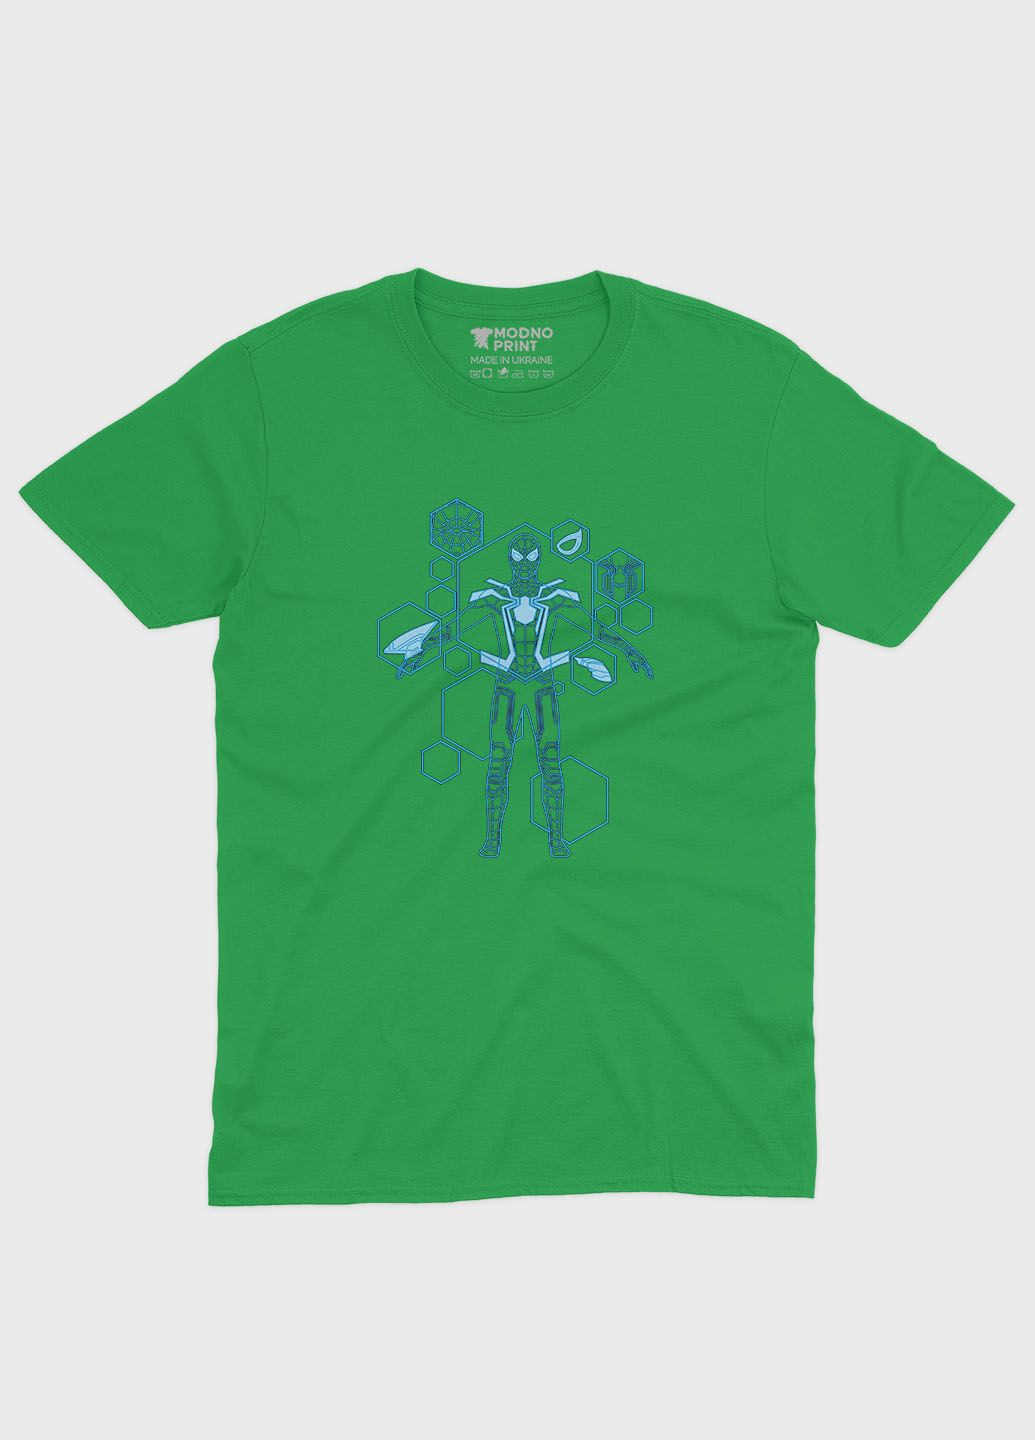 Зеленая демисезонная футболка для девочки с принтом супергероя - человек-паук (ts001-1-keg-006-014-094-g) Modno